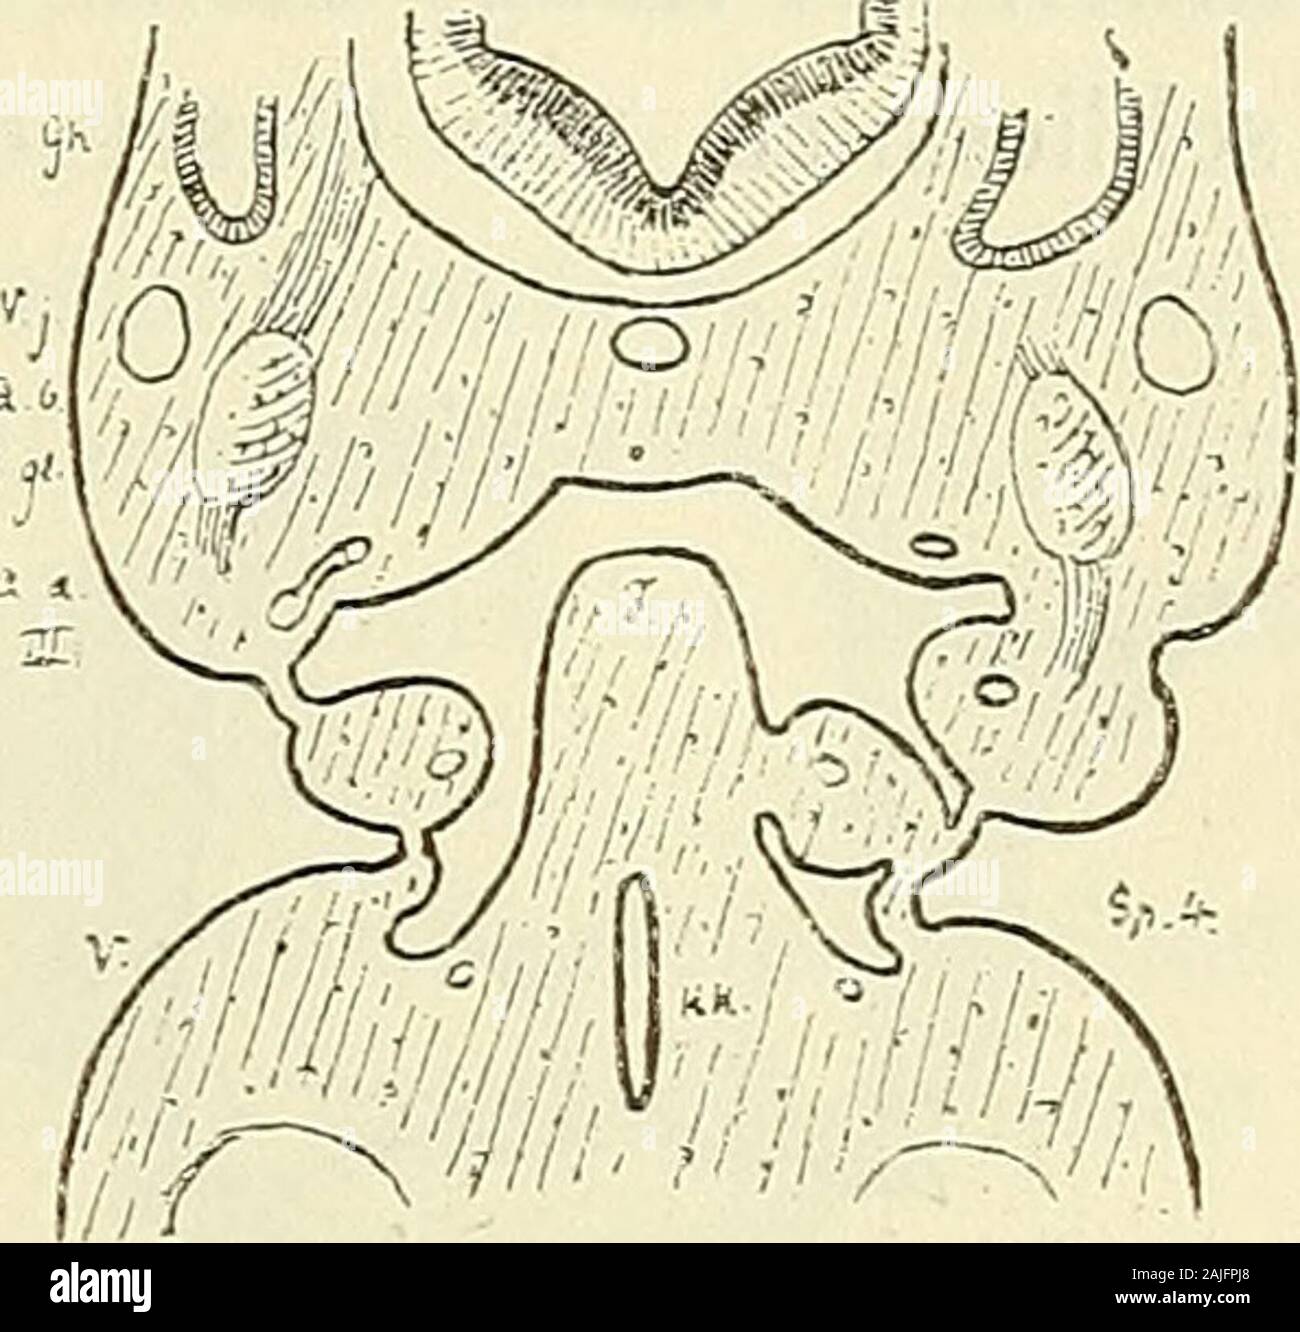 Anatomie menschlicher Embryonen . Fig. 49. Fig. 50. Durchscknitte vom Emtoyo Pr. Beide Sclmitte sind etwas unsymmetrisch.. Fig. 49 links zeigt?den dritten Schlundbogenwulst von der Furcula getrennt, rechts damit verlmnden. Bei Fig. 50kehrt Verhältniss dasselbe für den vierten Schlundbogenwulst wieder. Bei Fig. 49 sind rechts diedritte und die vierte innere Schlundspalte überbrückt, bei Fig. 50 nur die vierte. Gh Gehör-hlase, A. b Arteria hasUaris, A. d Aorta descendens, A. una aorta ascendeus, V. j Vena jugul.,///, /Fu. r 3., 4. u. 5. Aortenhogen (hez. Schlundhogen), /Furcula, /r* Kehlkopf,N. gl Foto Stock